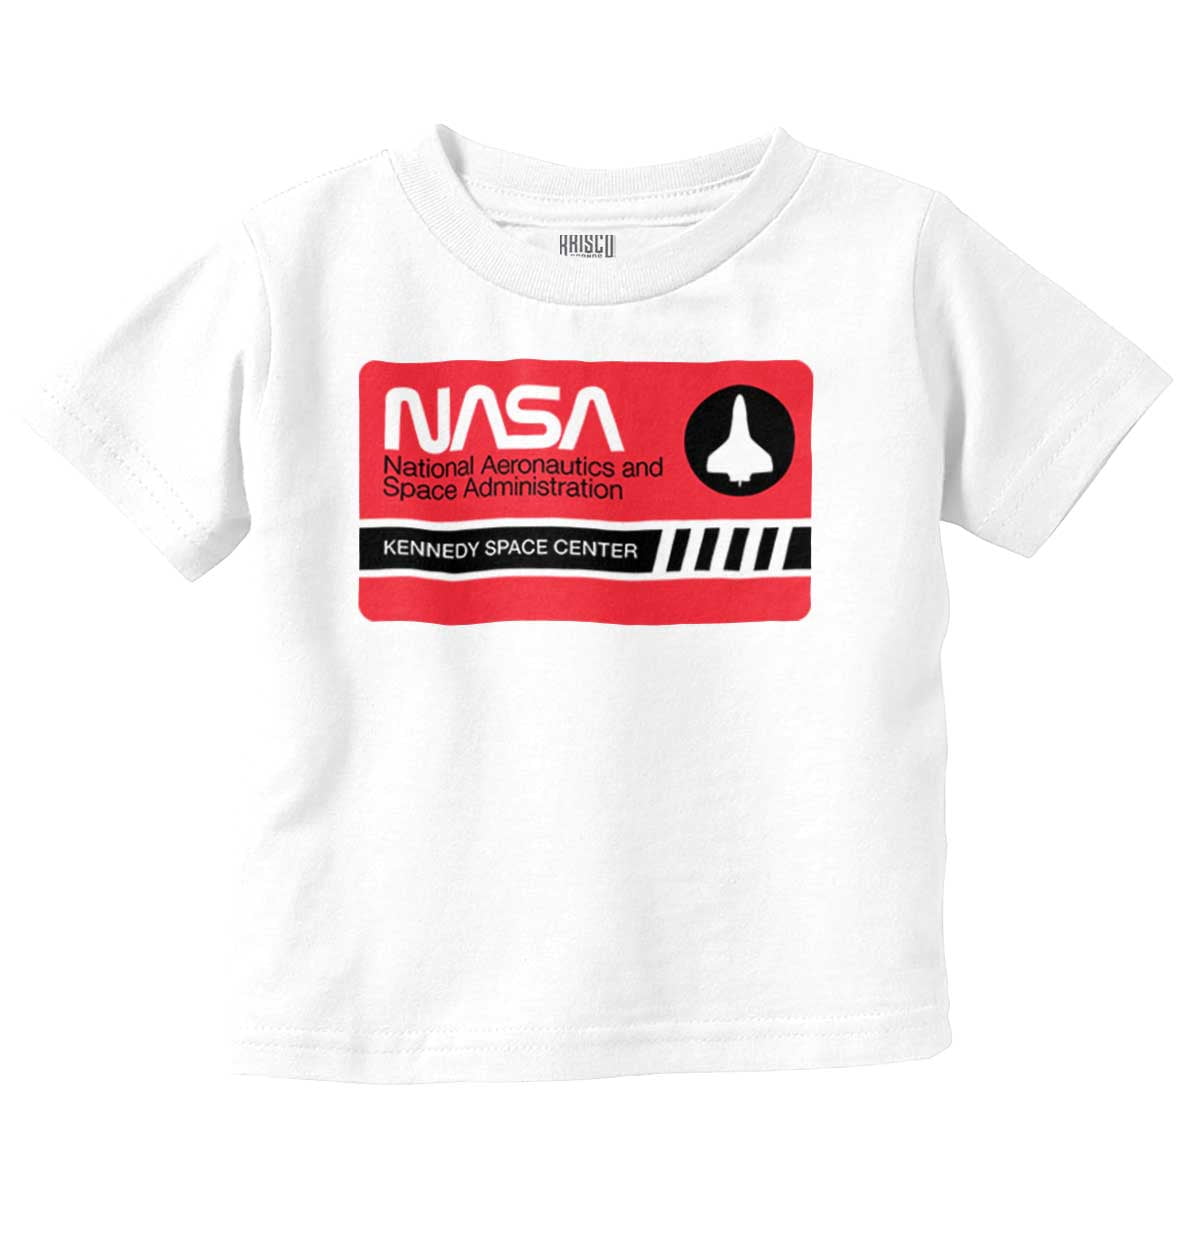 NASA Brand Center